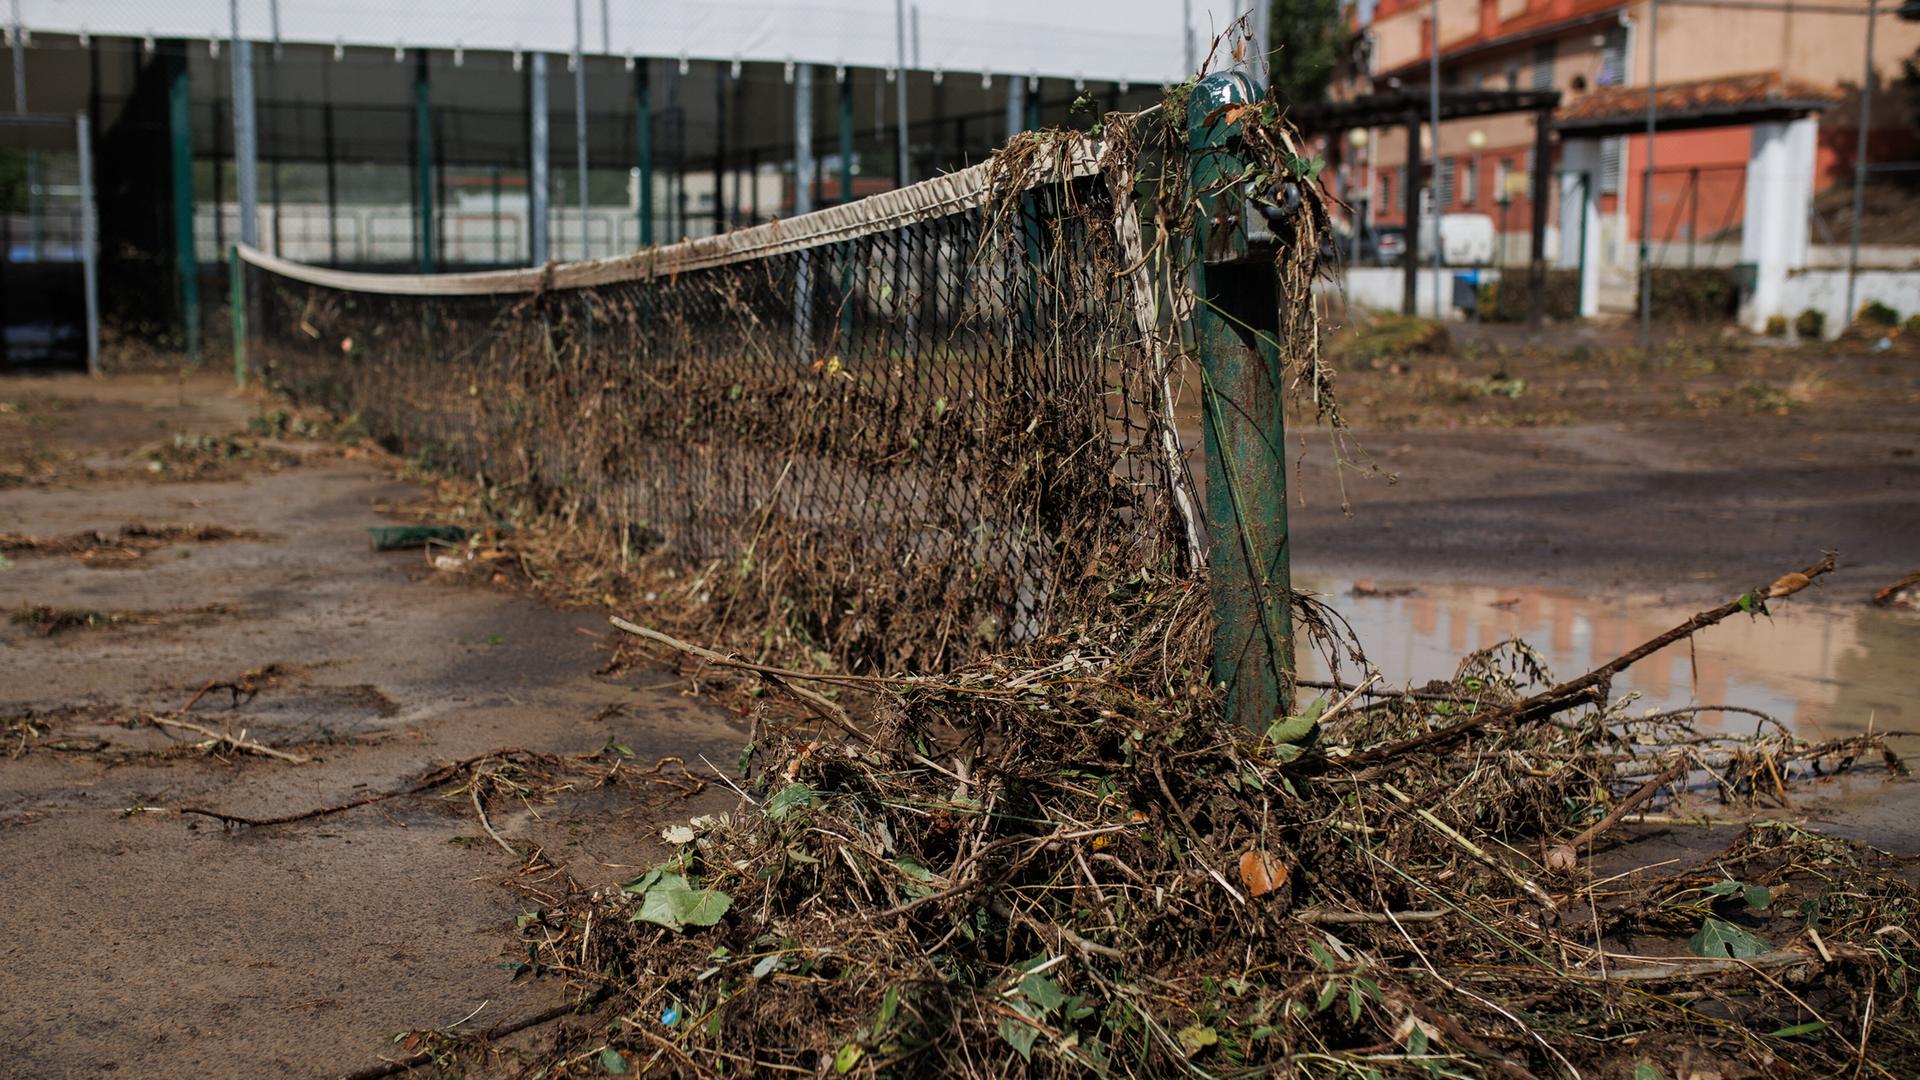 Blick auf einen verwüsteten Tennisplatz in Spanien. Am Netz hängen Sträucher. Der Boden ist mit Schlamm übersät. 